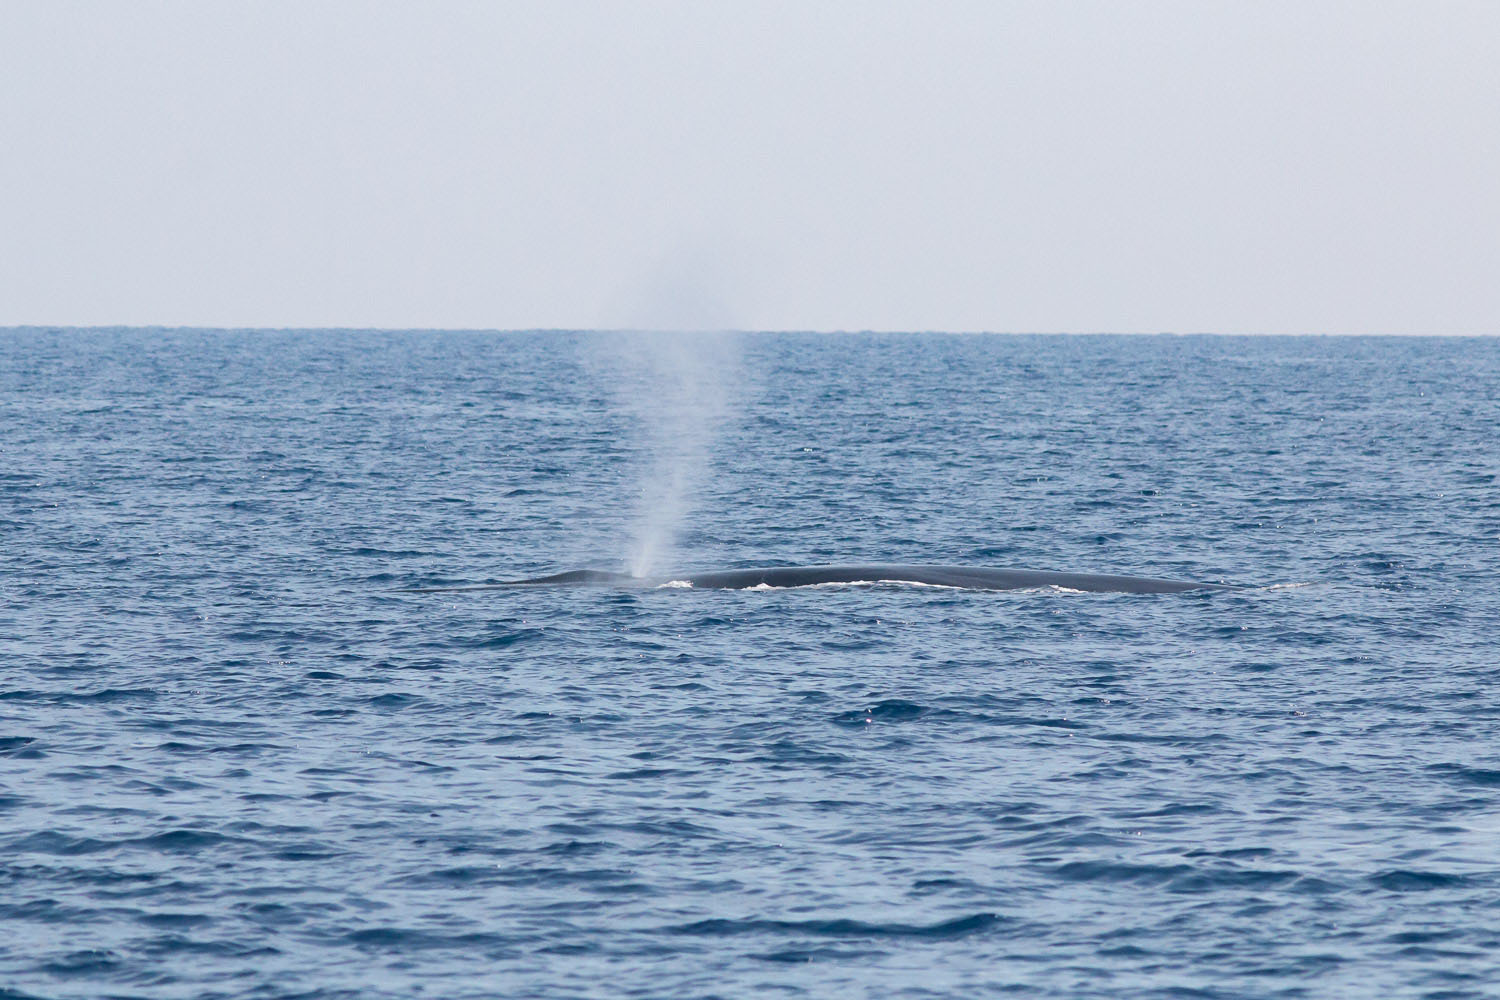 voyage scientifique - cetaces de mediterranee vers la corse a la voile 22